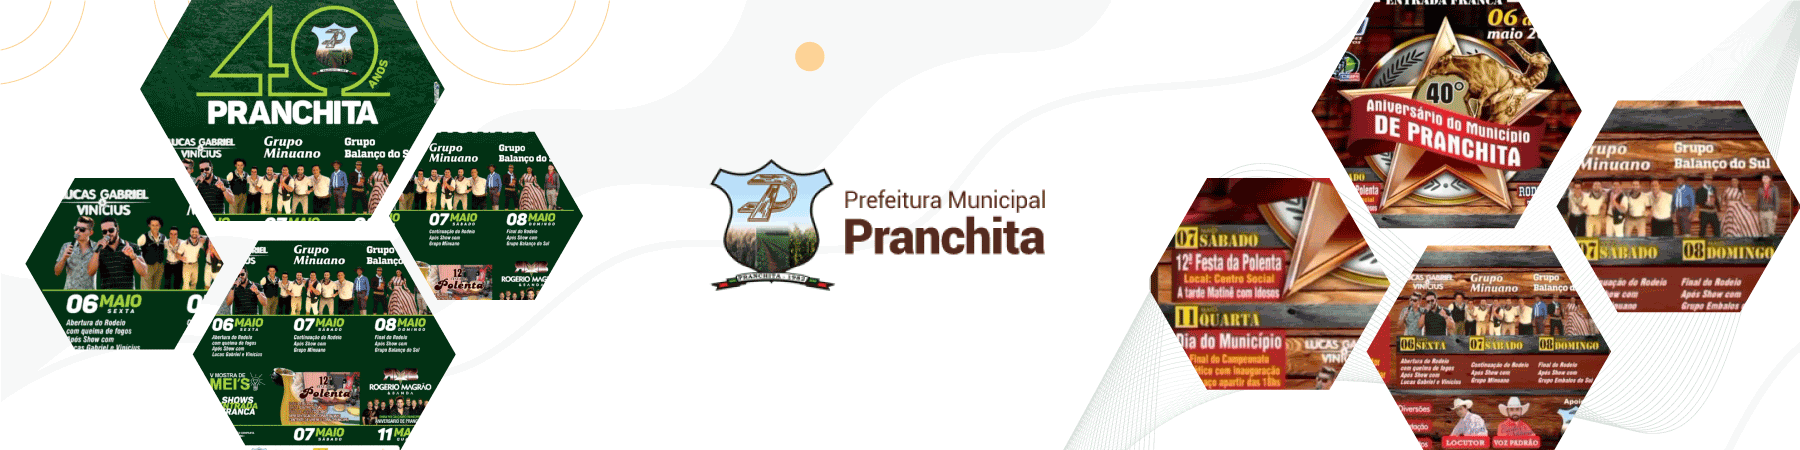 Aniversário de Pranchita